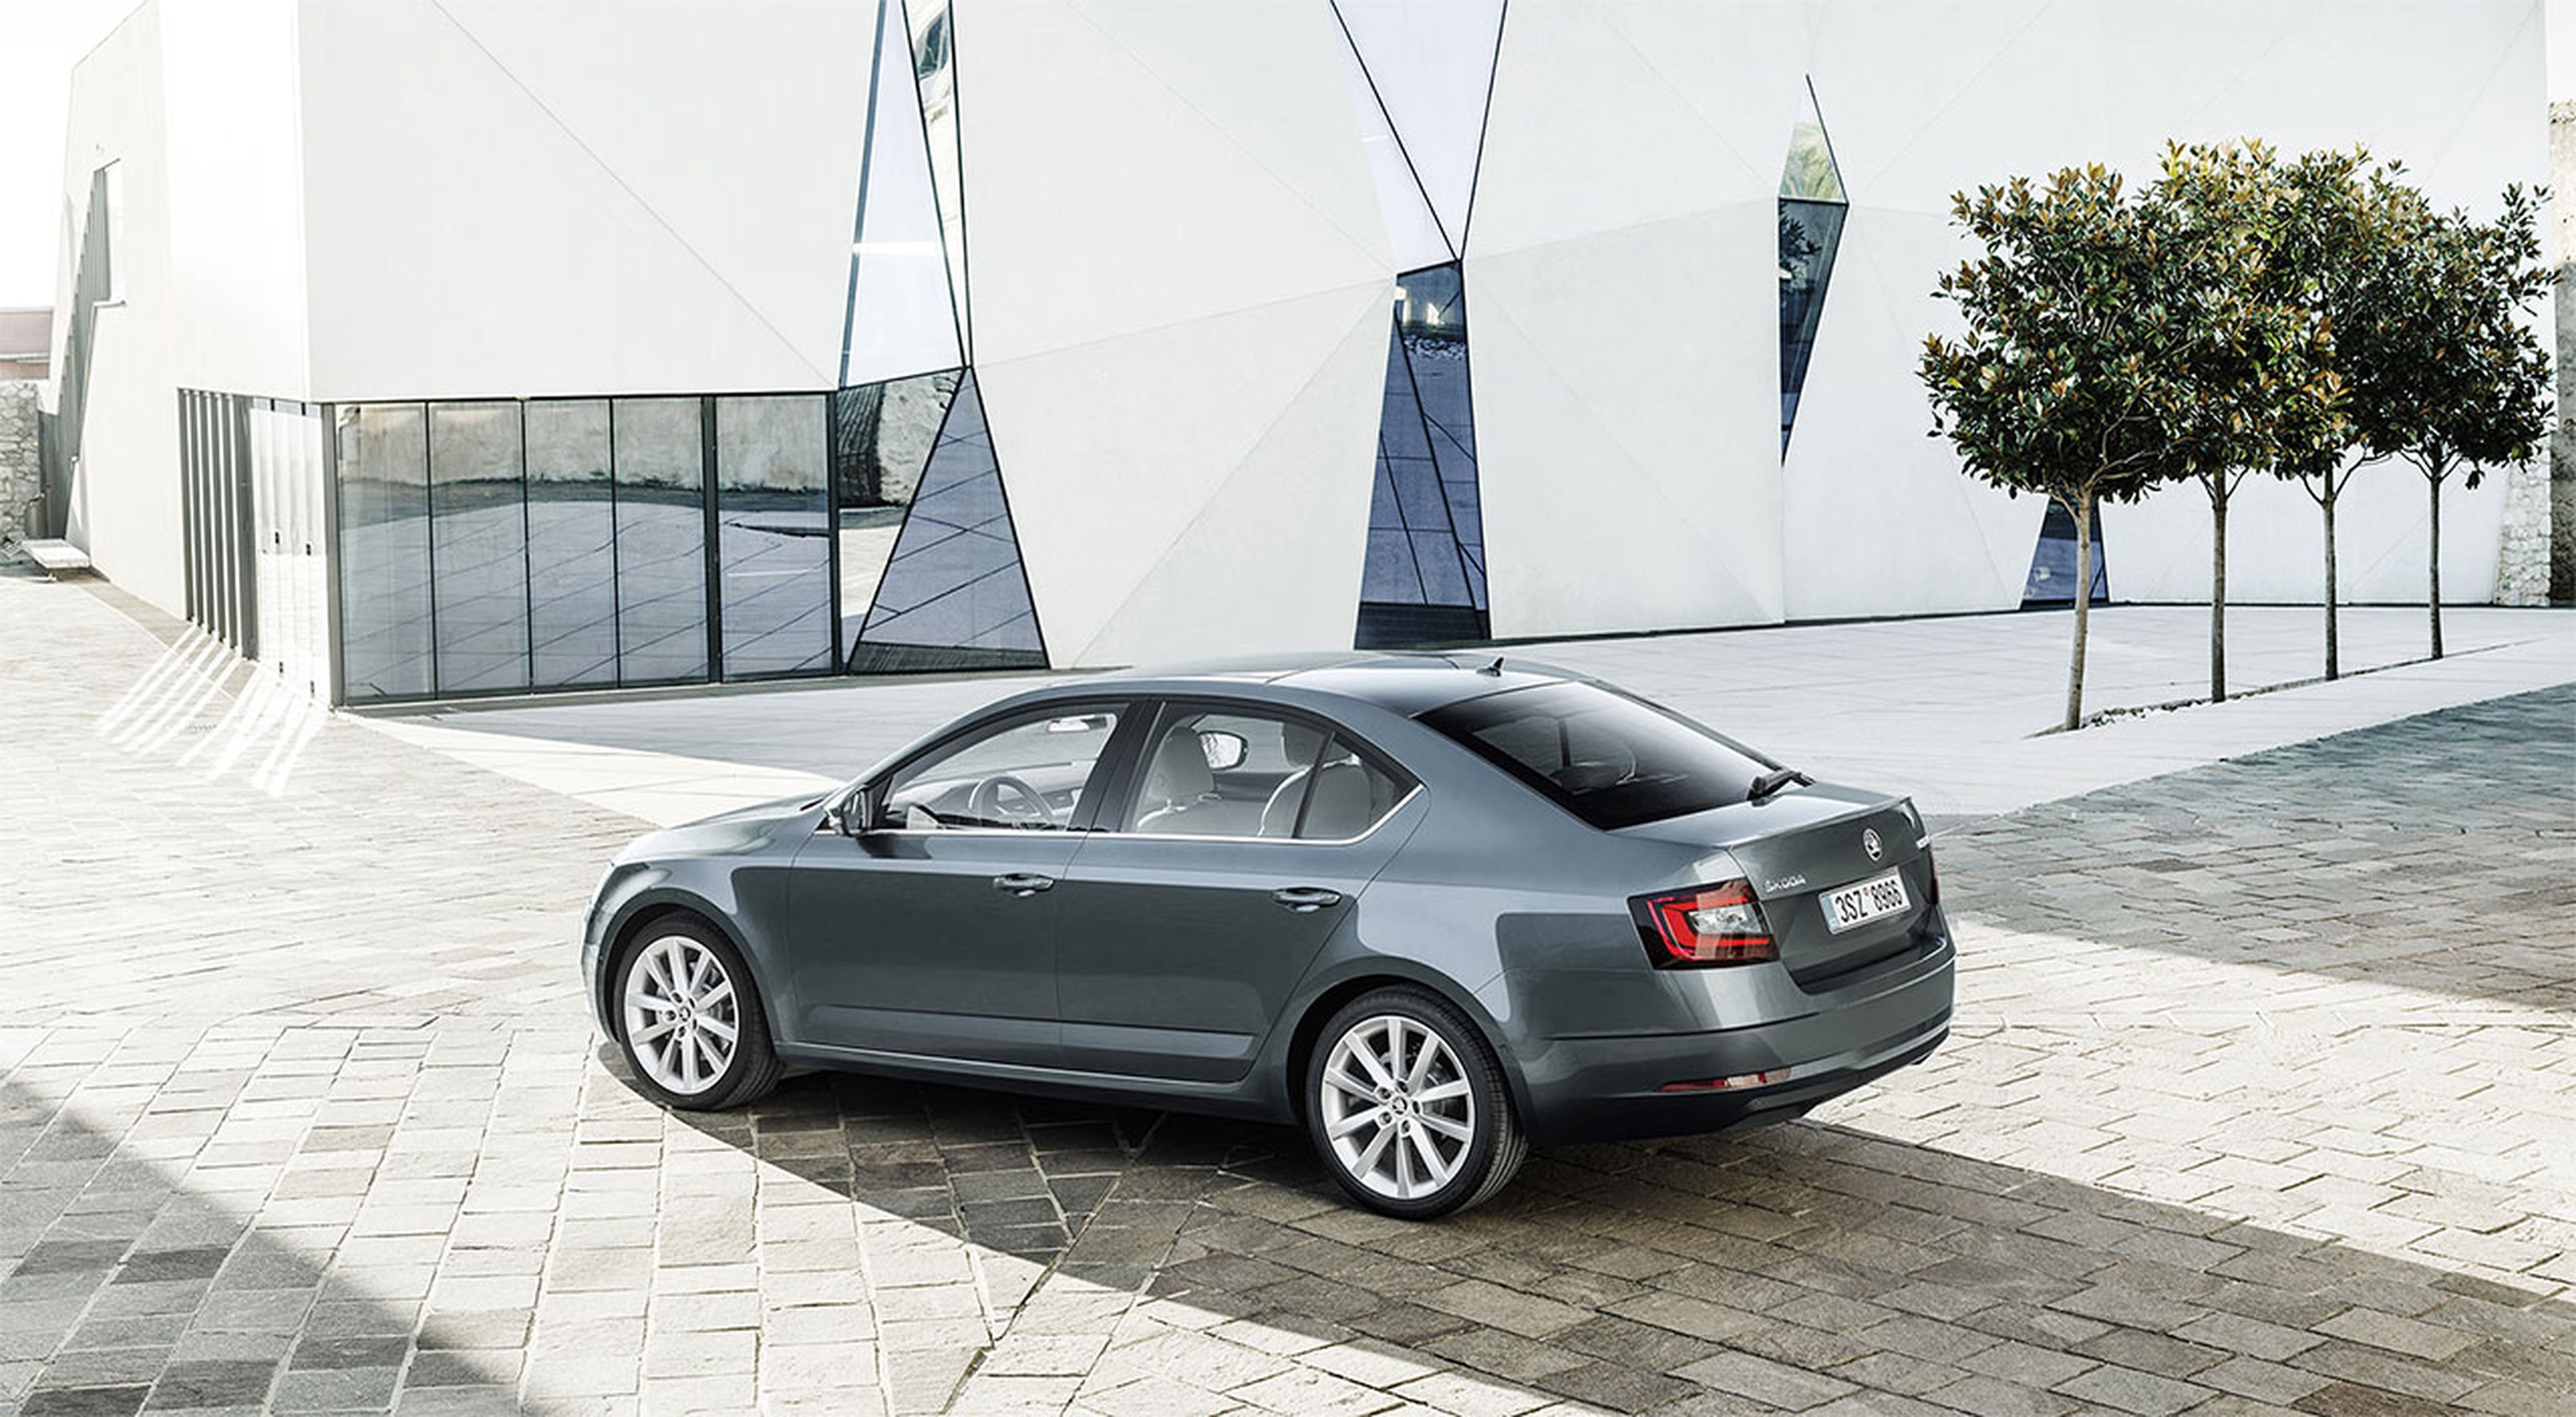 Descubre la máxima seguridad con el nuevo Škoda Octavia